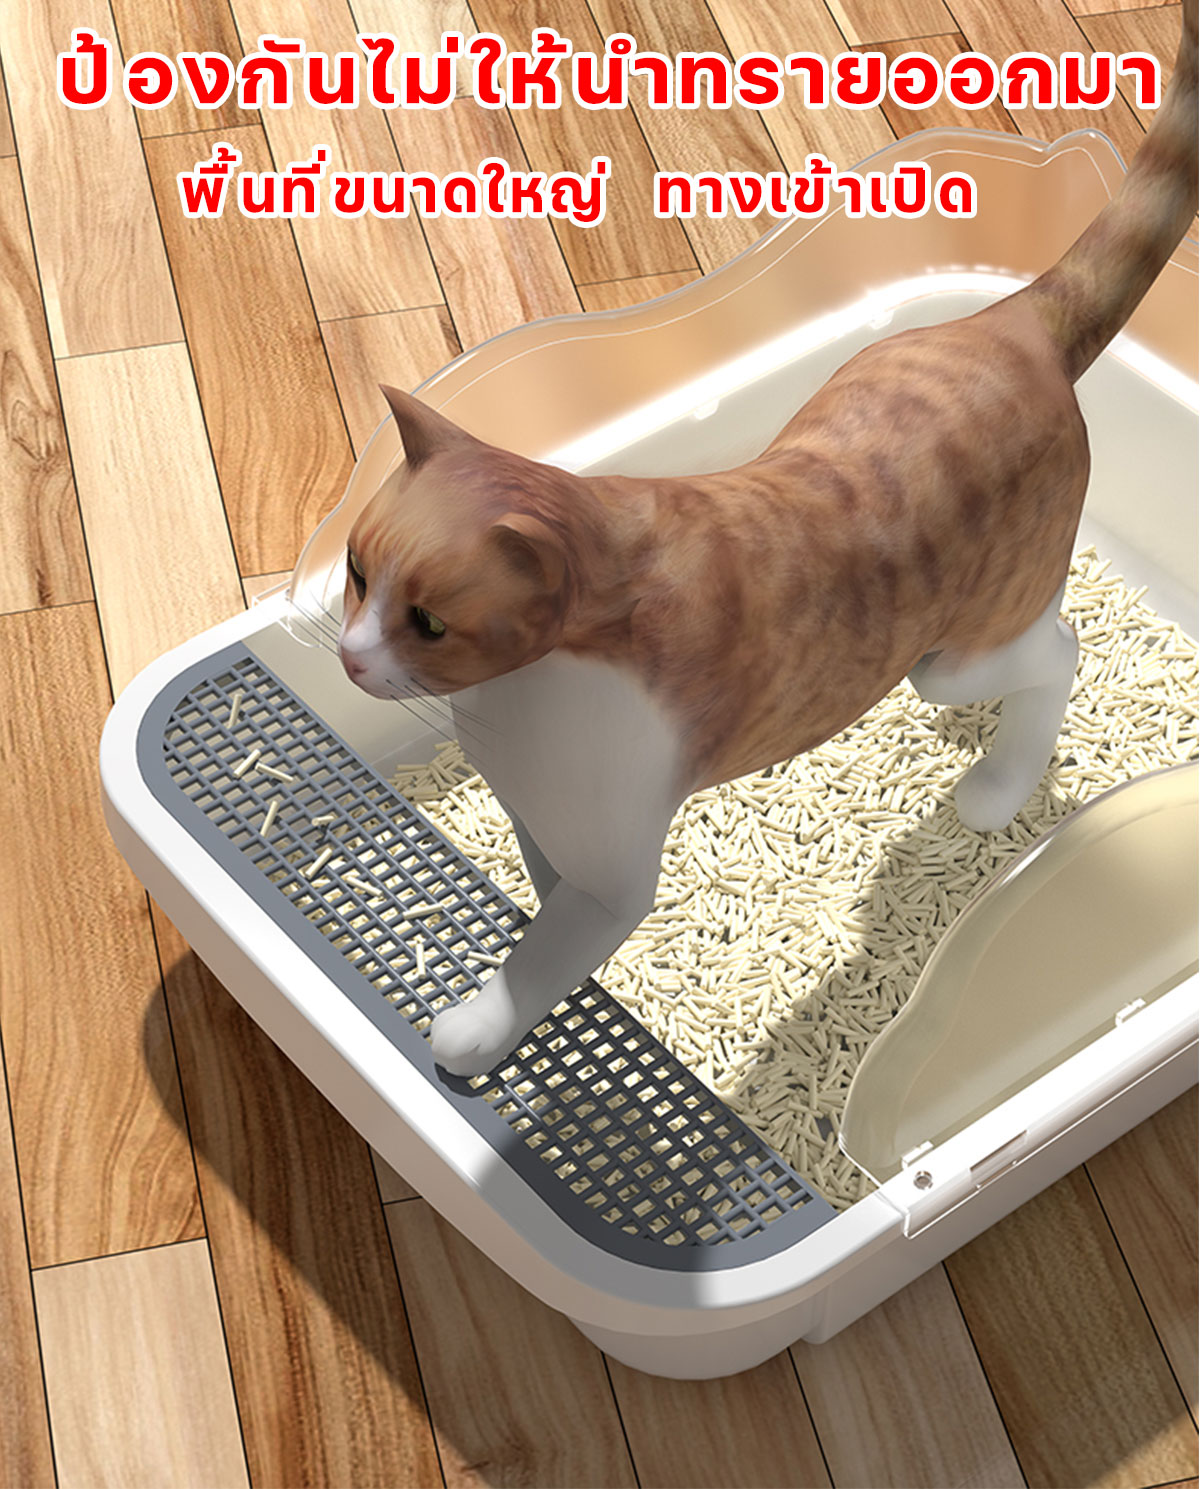 รูปภาพของ แมวน้ำหนัก 40 กก. กระโดดลงไป ทรายแมวไม่กระเด็นออกมา OUMANDI ห้องน้ำแมว กระบะทรายแมวXXXXL เพิ่มขนาด เพิ่มความลึก อัพเกรดระงับกลิ่นกาย ป้องกันการกระเด็น กระบะทรายแมวโต ห้องน้ำแมวใหญ่ กระบะทรายแมวใหญ กระบะทรายแมวขนาดใหญ่ ห้องน้ำแมวขนาดใหญ่ ส้วมแมว กระบะทราย